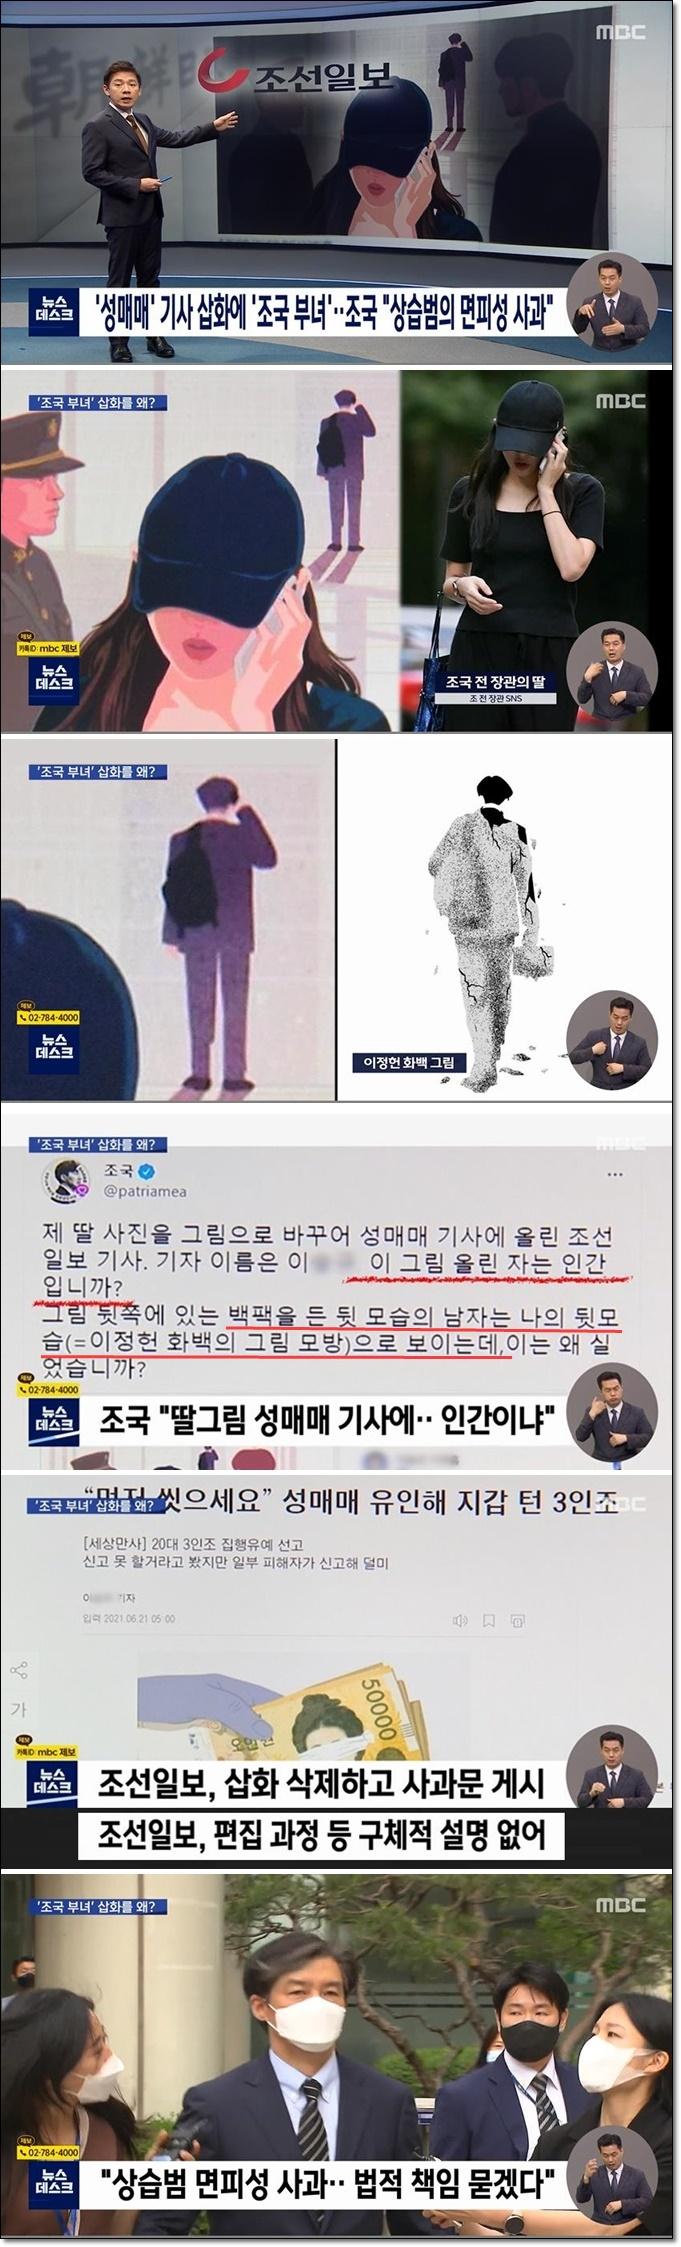 조선일보, 성매매 삽화에 조국 부녀 삽입(1).jpg